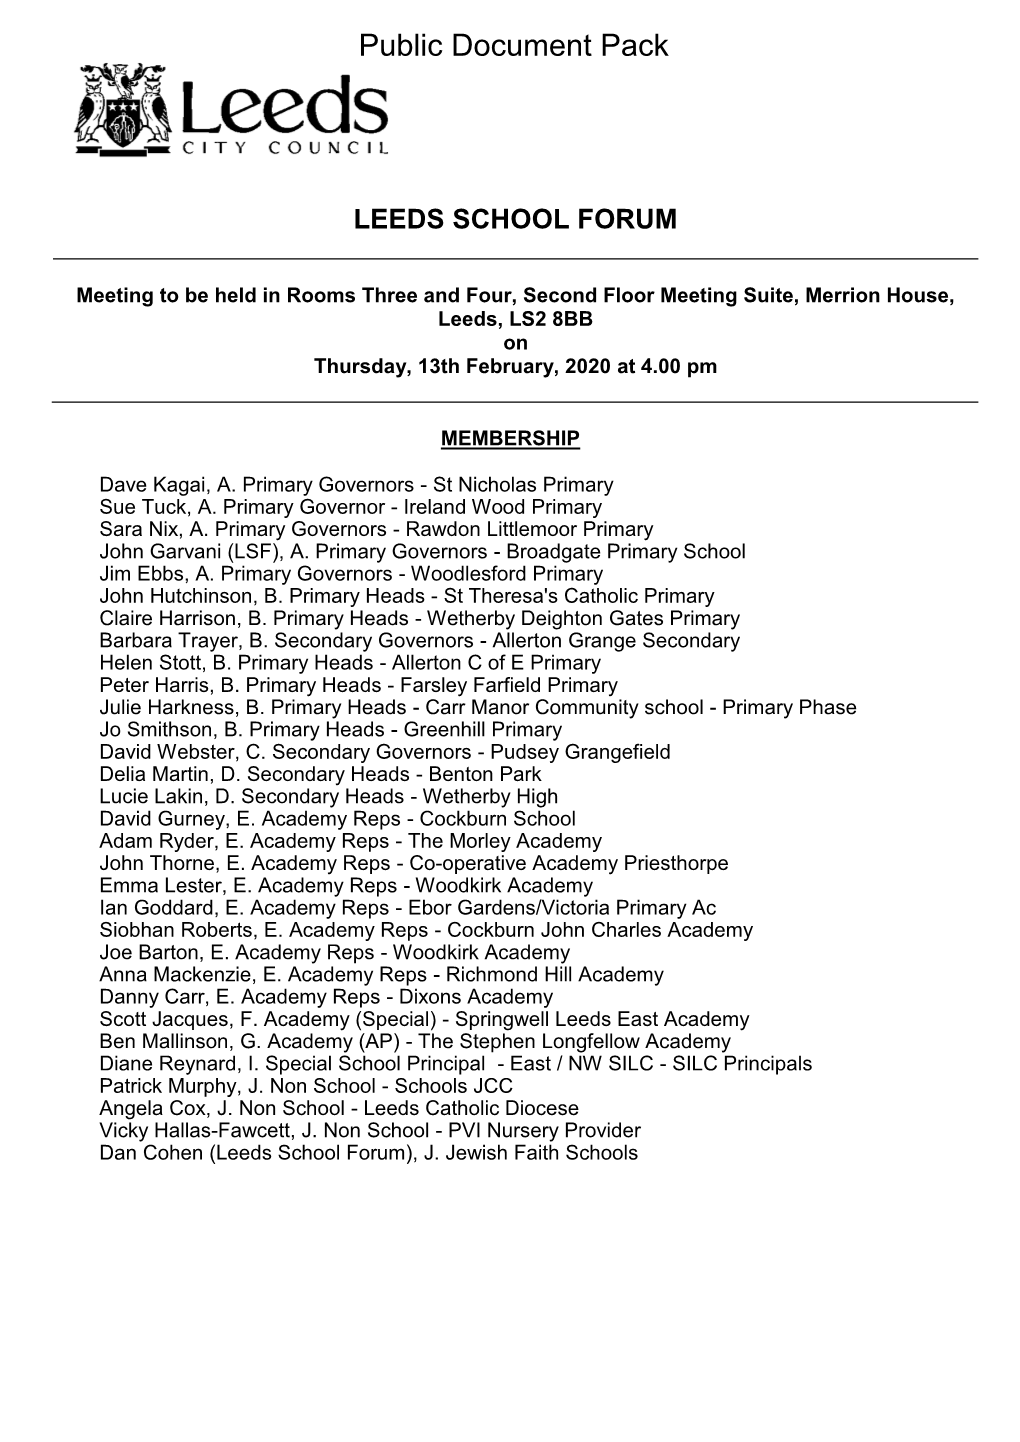 (Public Pack)Agenda Document for Leeds School Forum, 13/02/2020